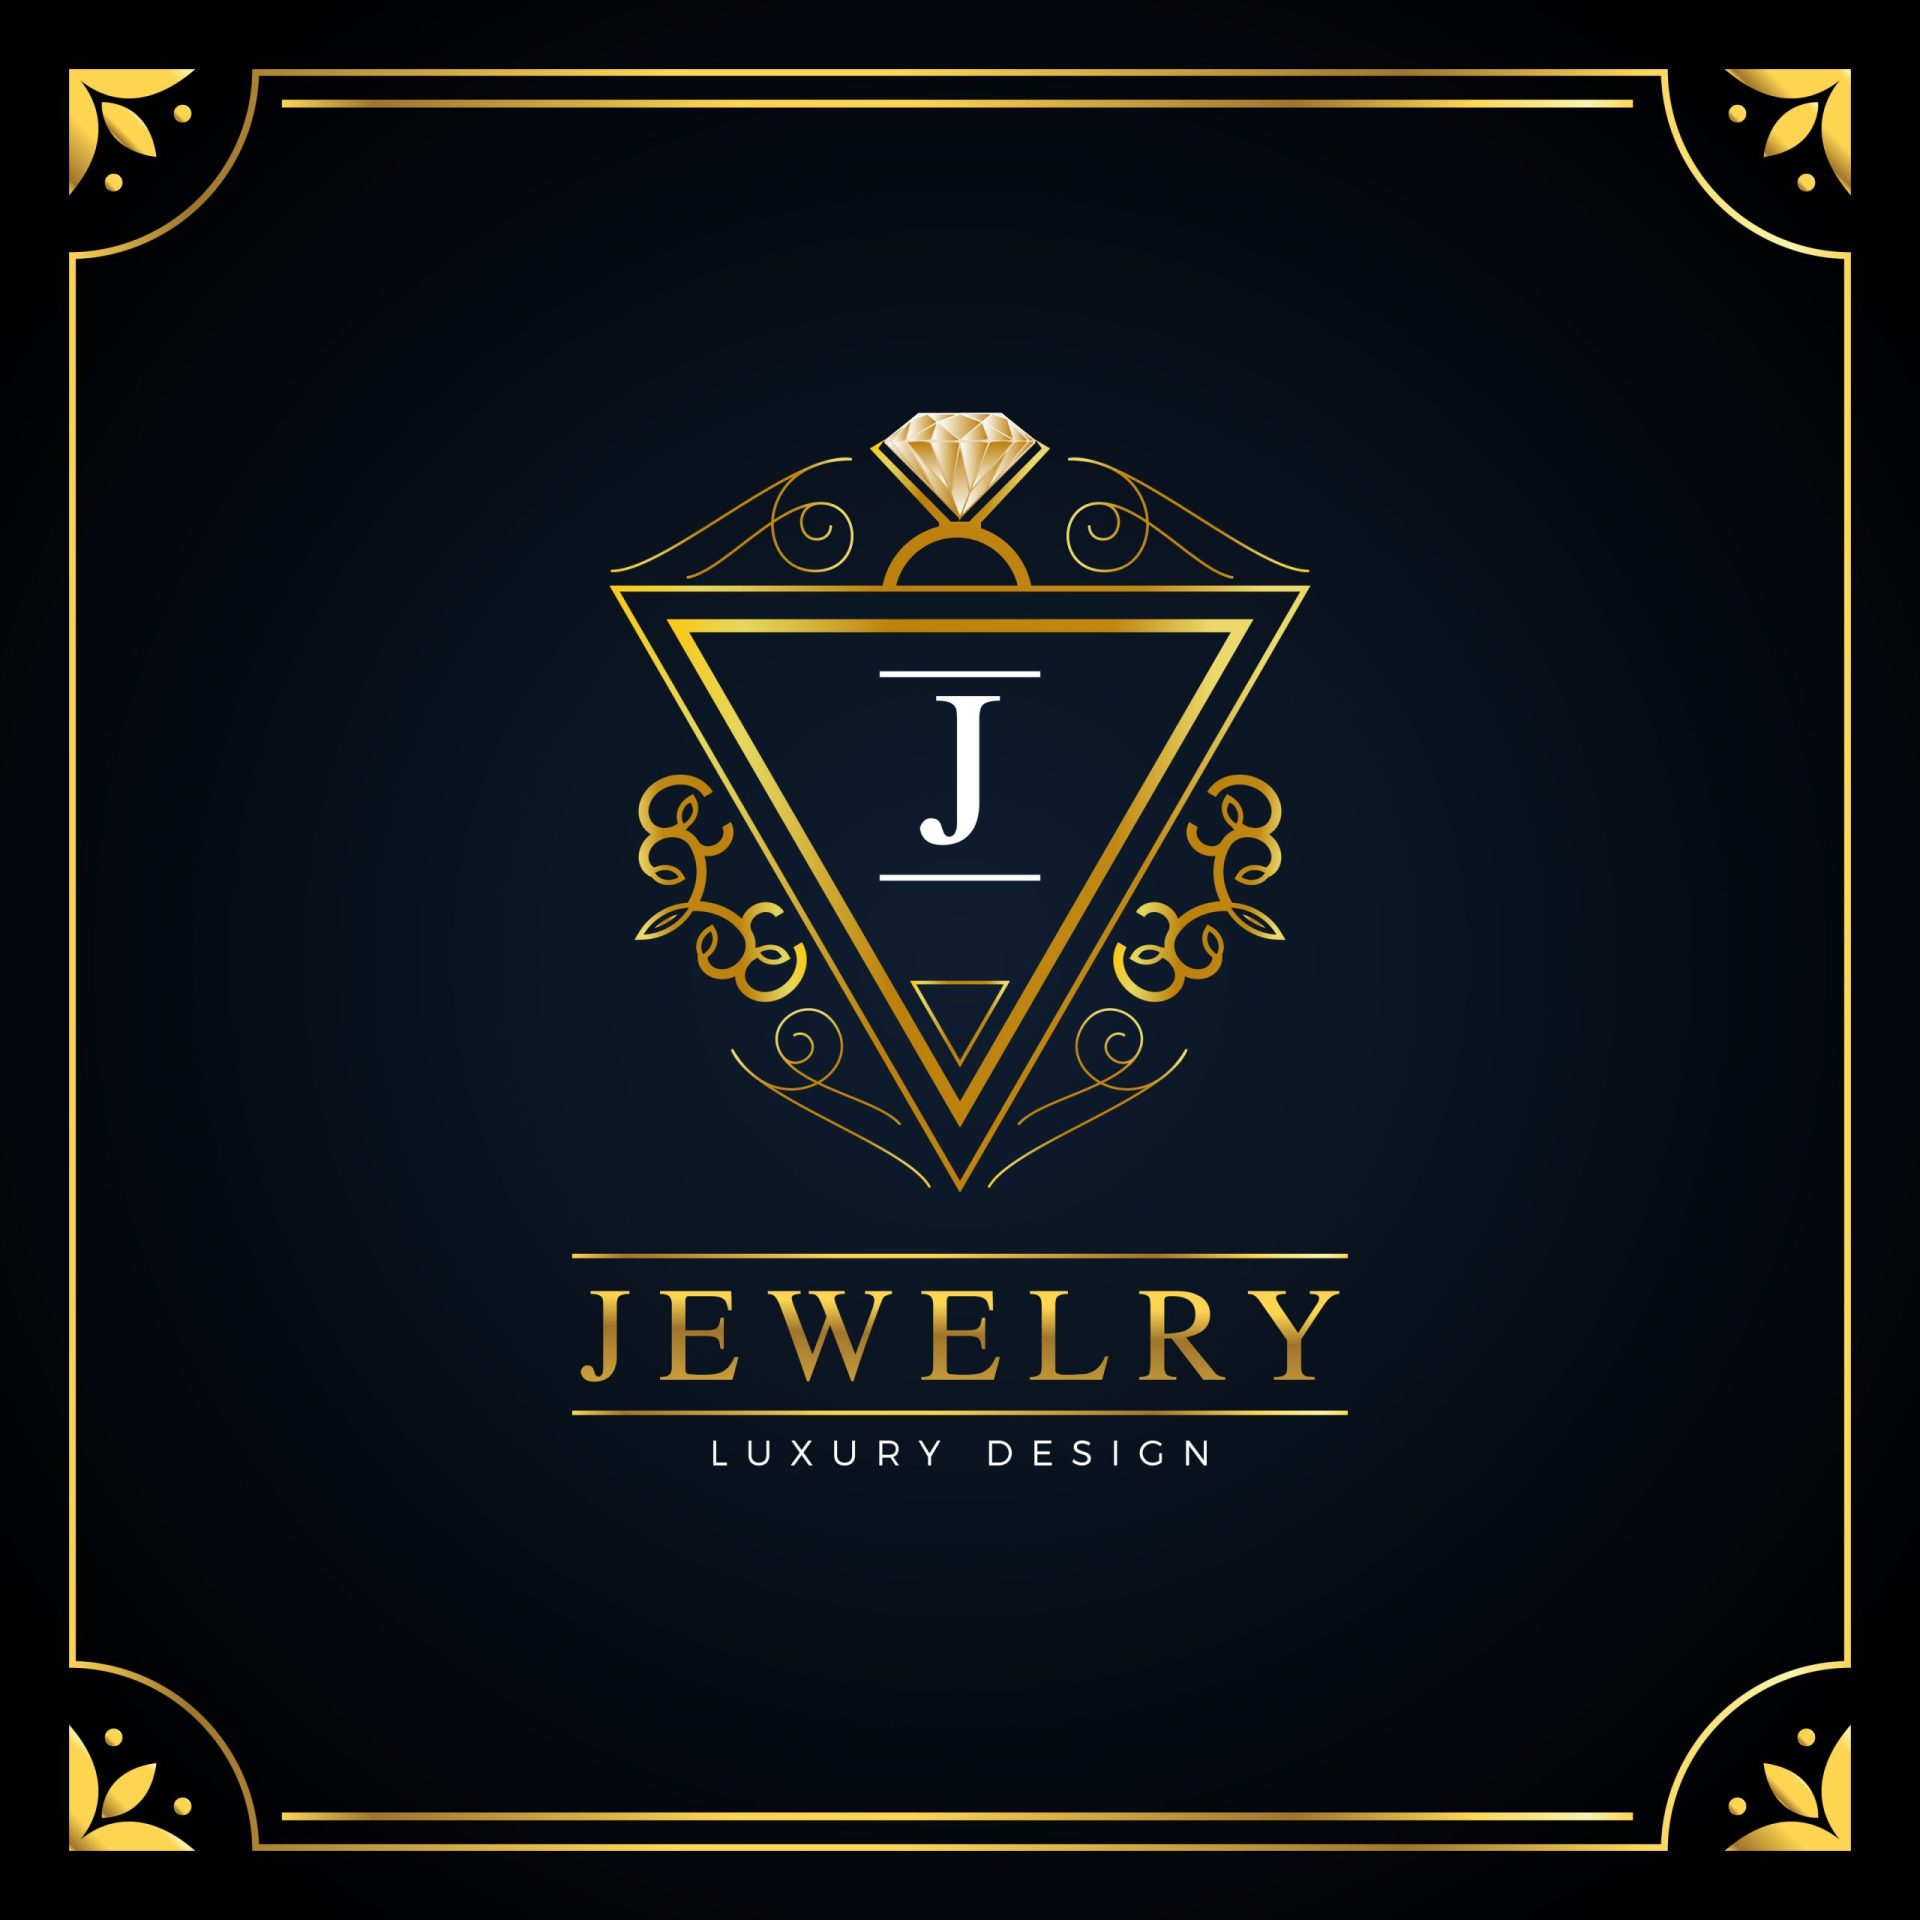 jewelry logo ideas 2